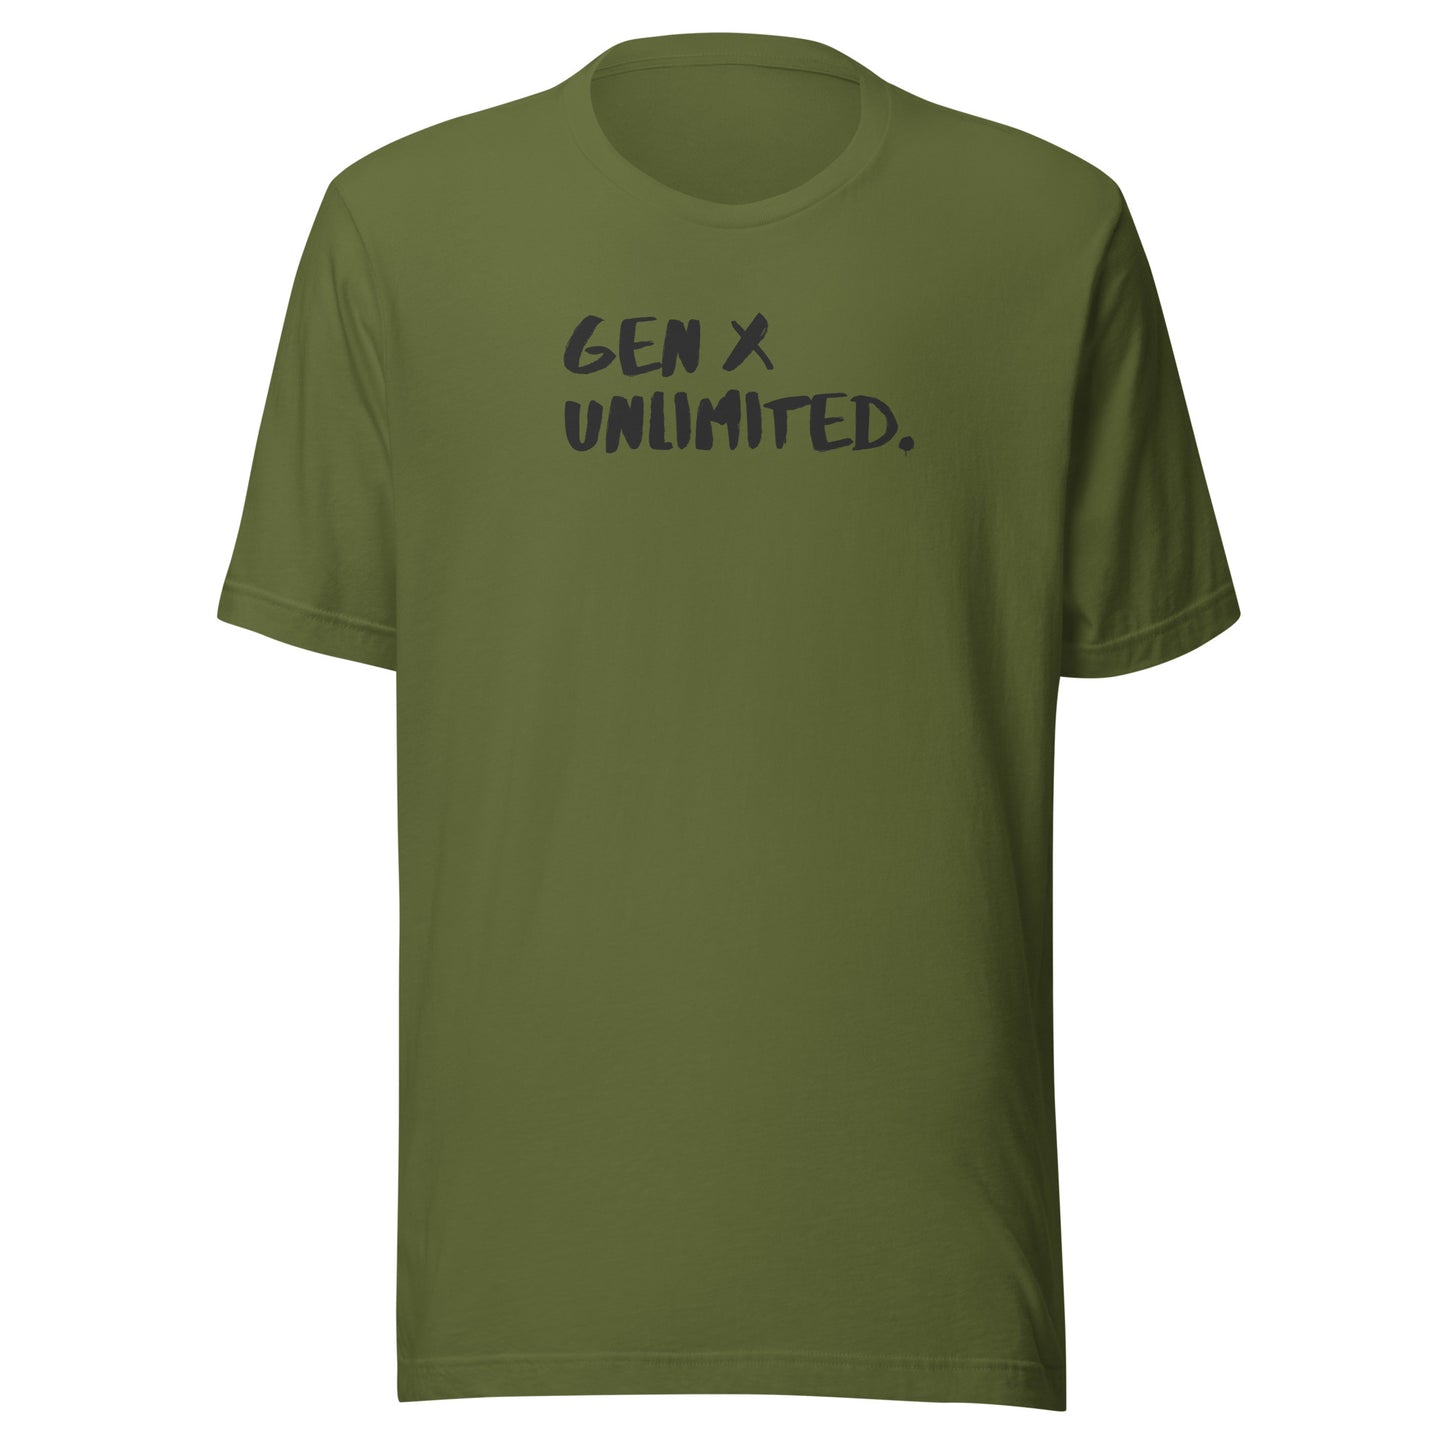 GEN X UNLIMITED. Unisex t-shirt